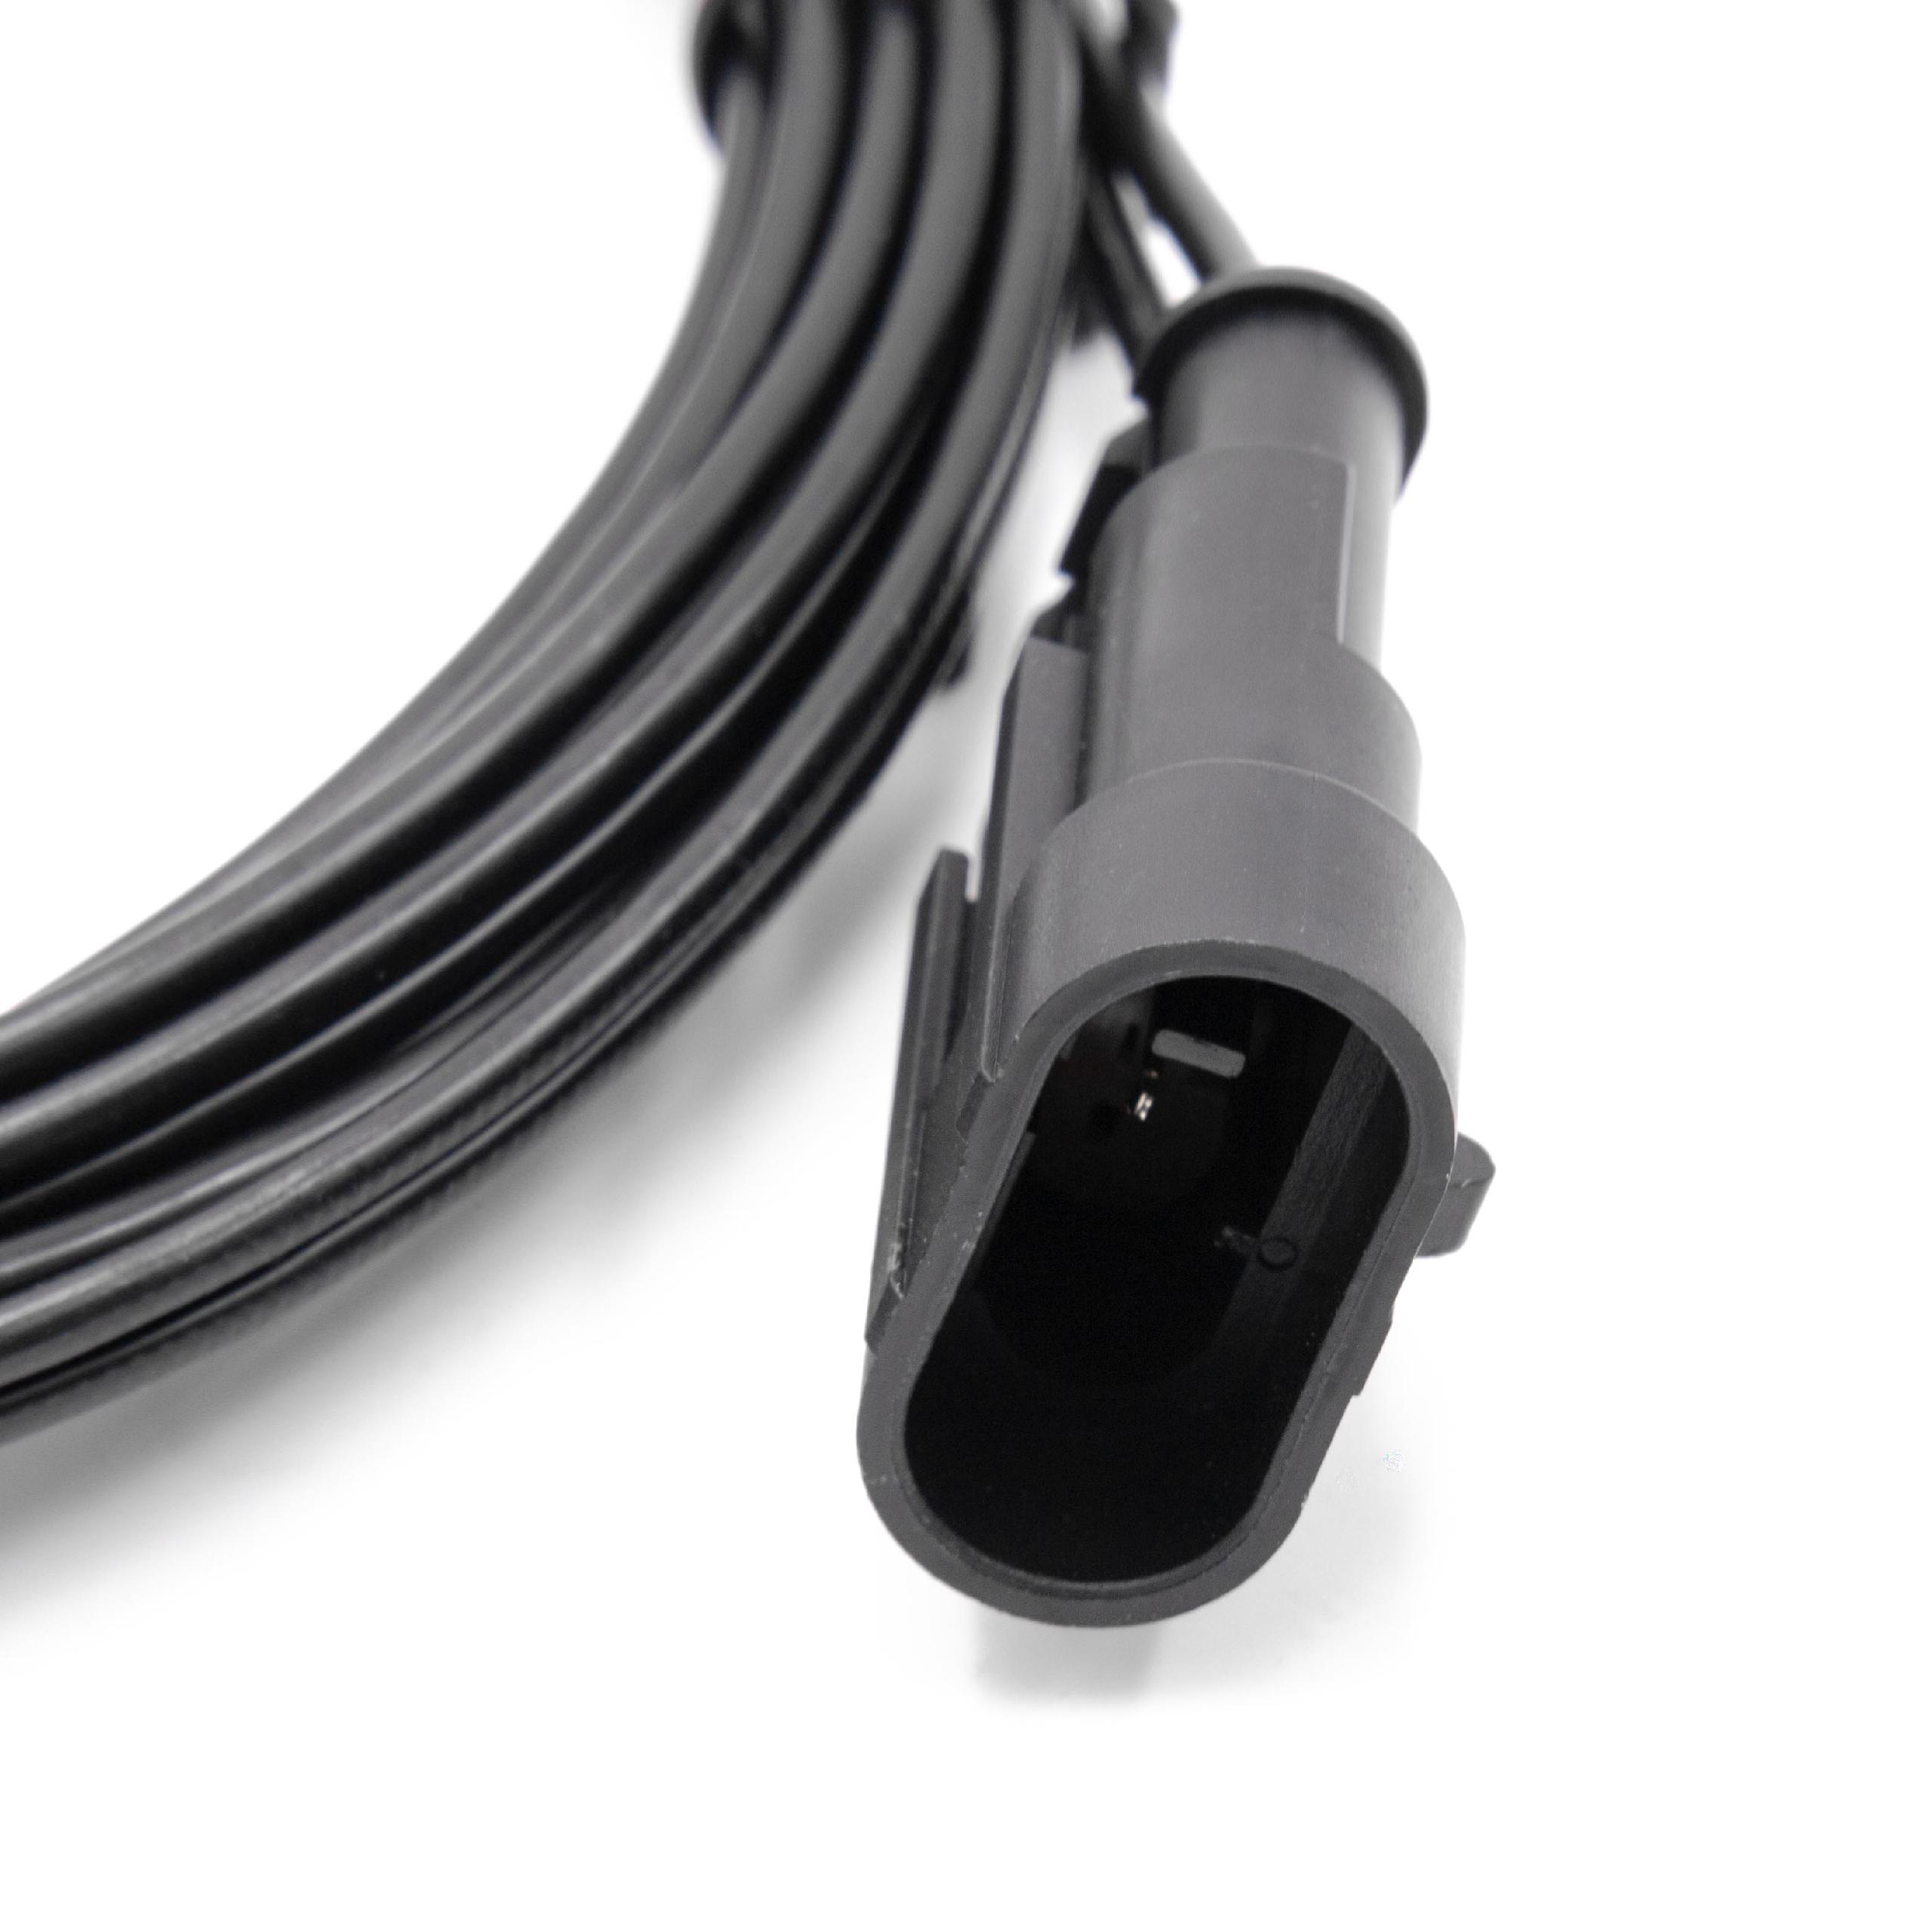 Câble de rechange pour Gardena 00057-98.251.01 pour robot tondeuse - Câble basse tension, 3 m